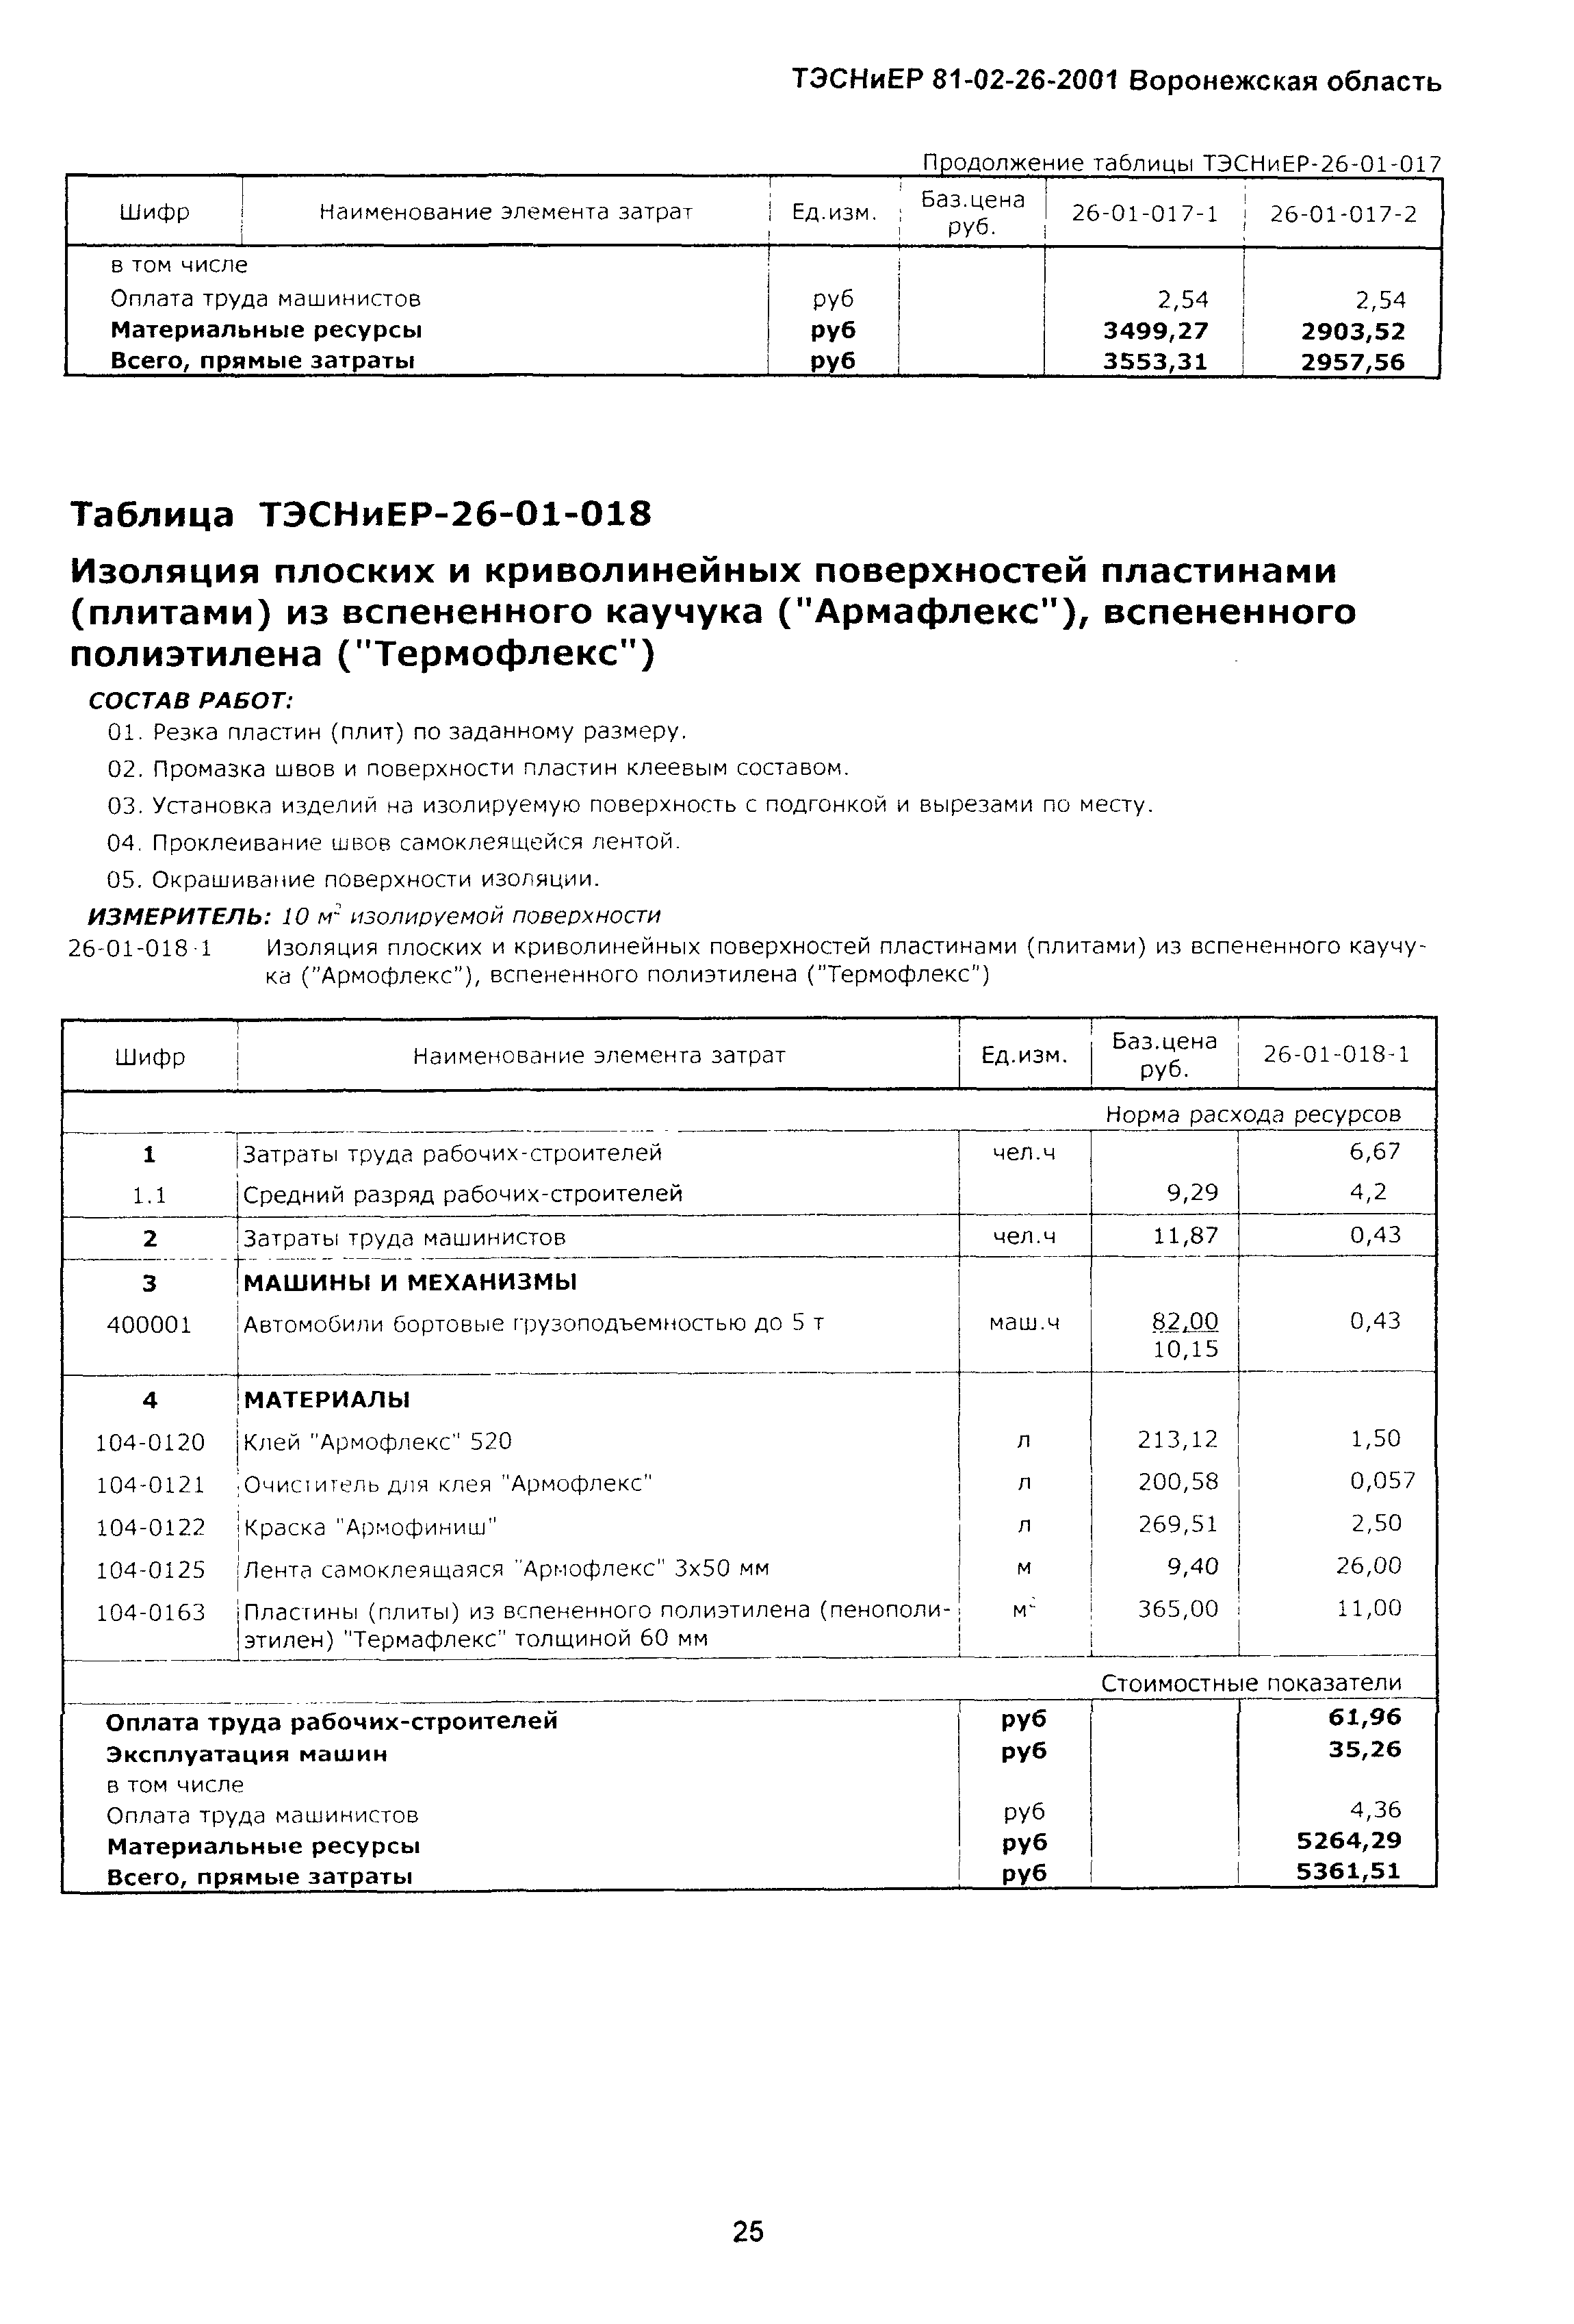 ТЭСНиЕР Воронежская область 81-02-26-2001